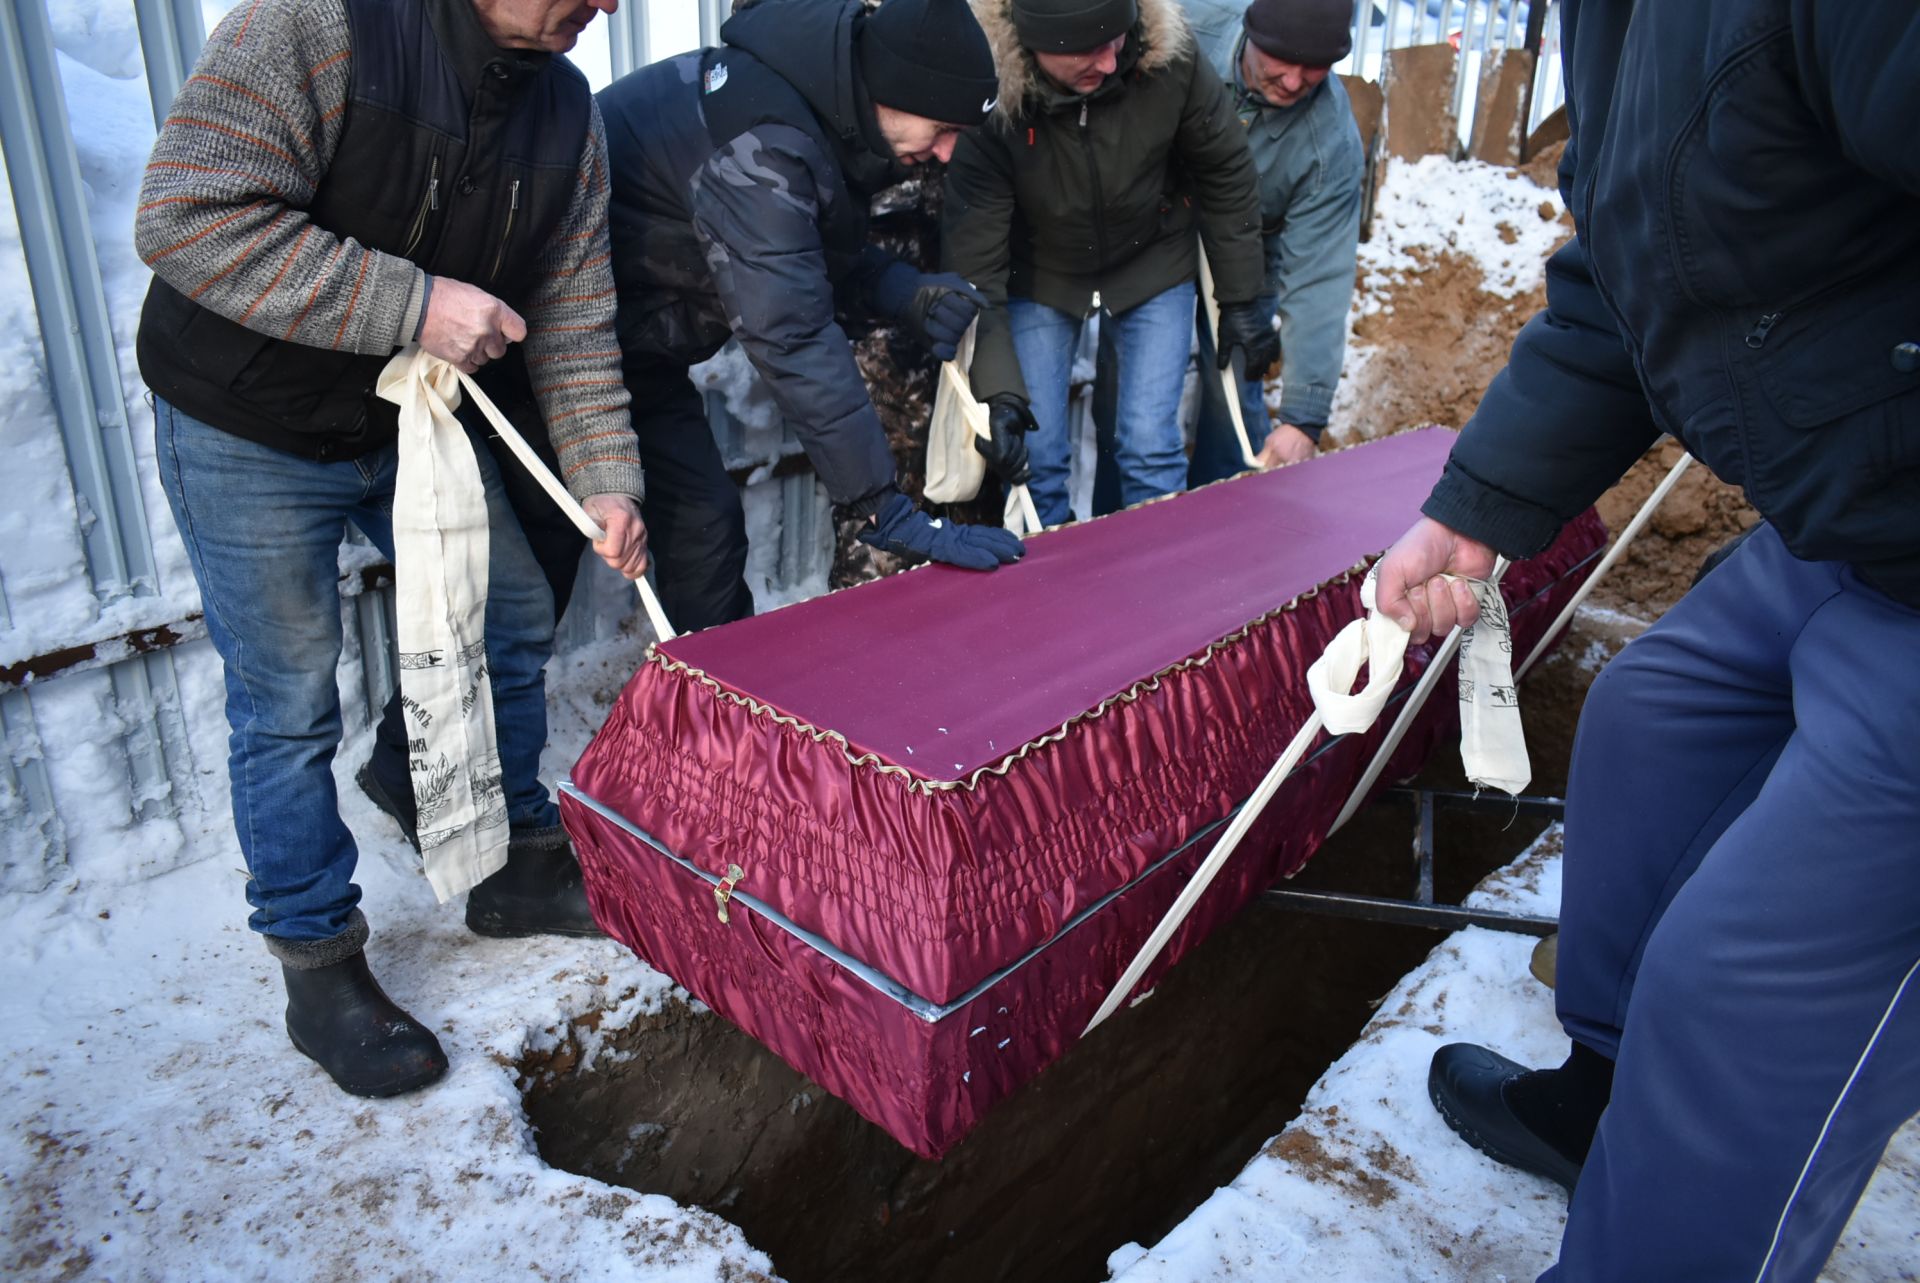 В Болгаре простились с погибшим бойцом СВО Алексеем Кошкиным